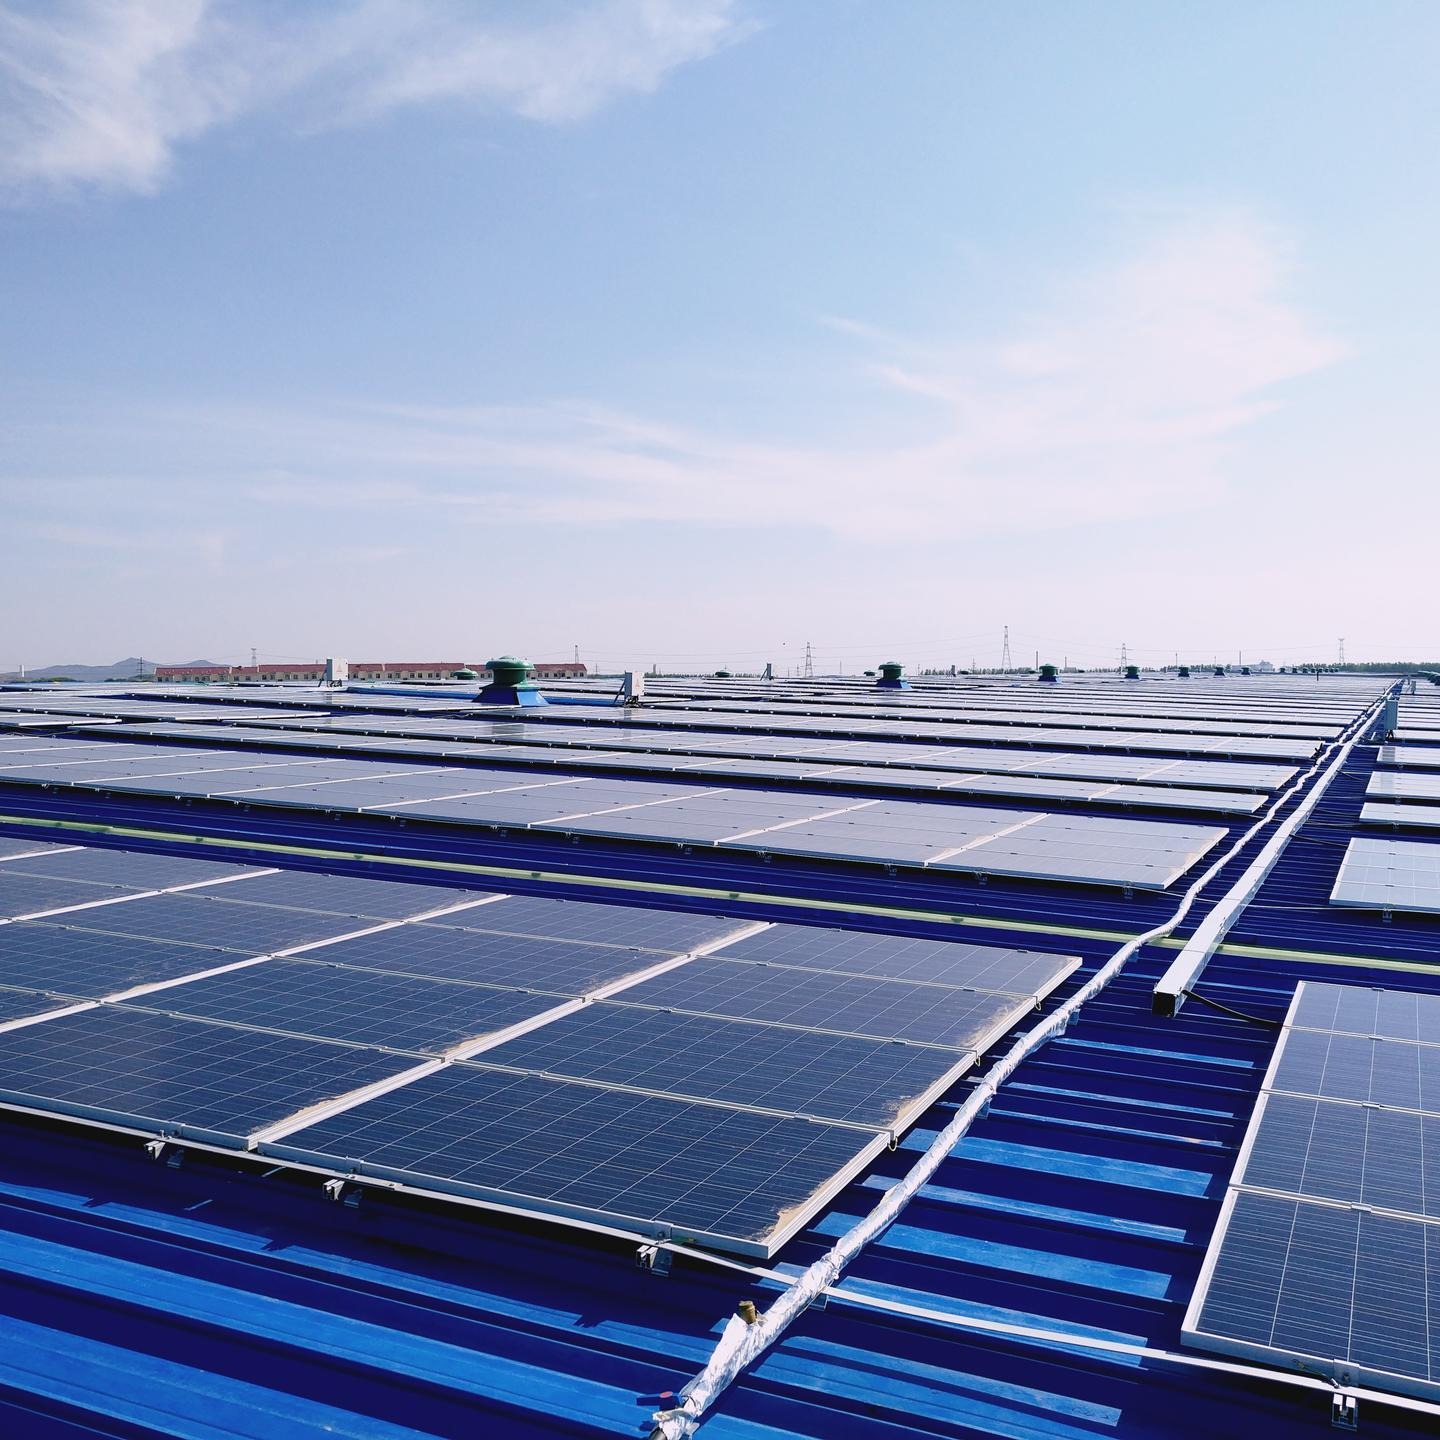 工商业屋顶光伏发电 节省企业用电成本 光伏发电多种应用形式 太阳能发电系统